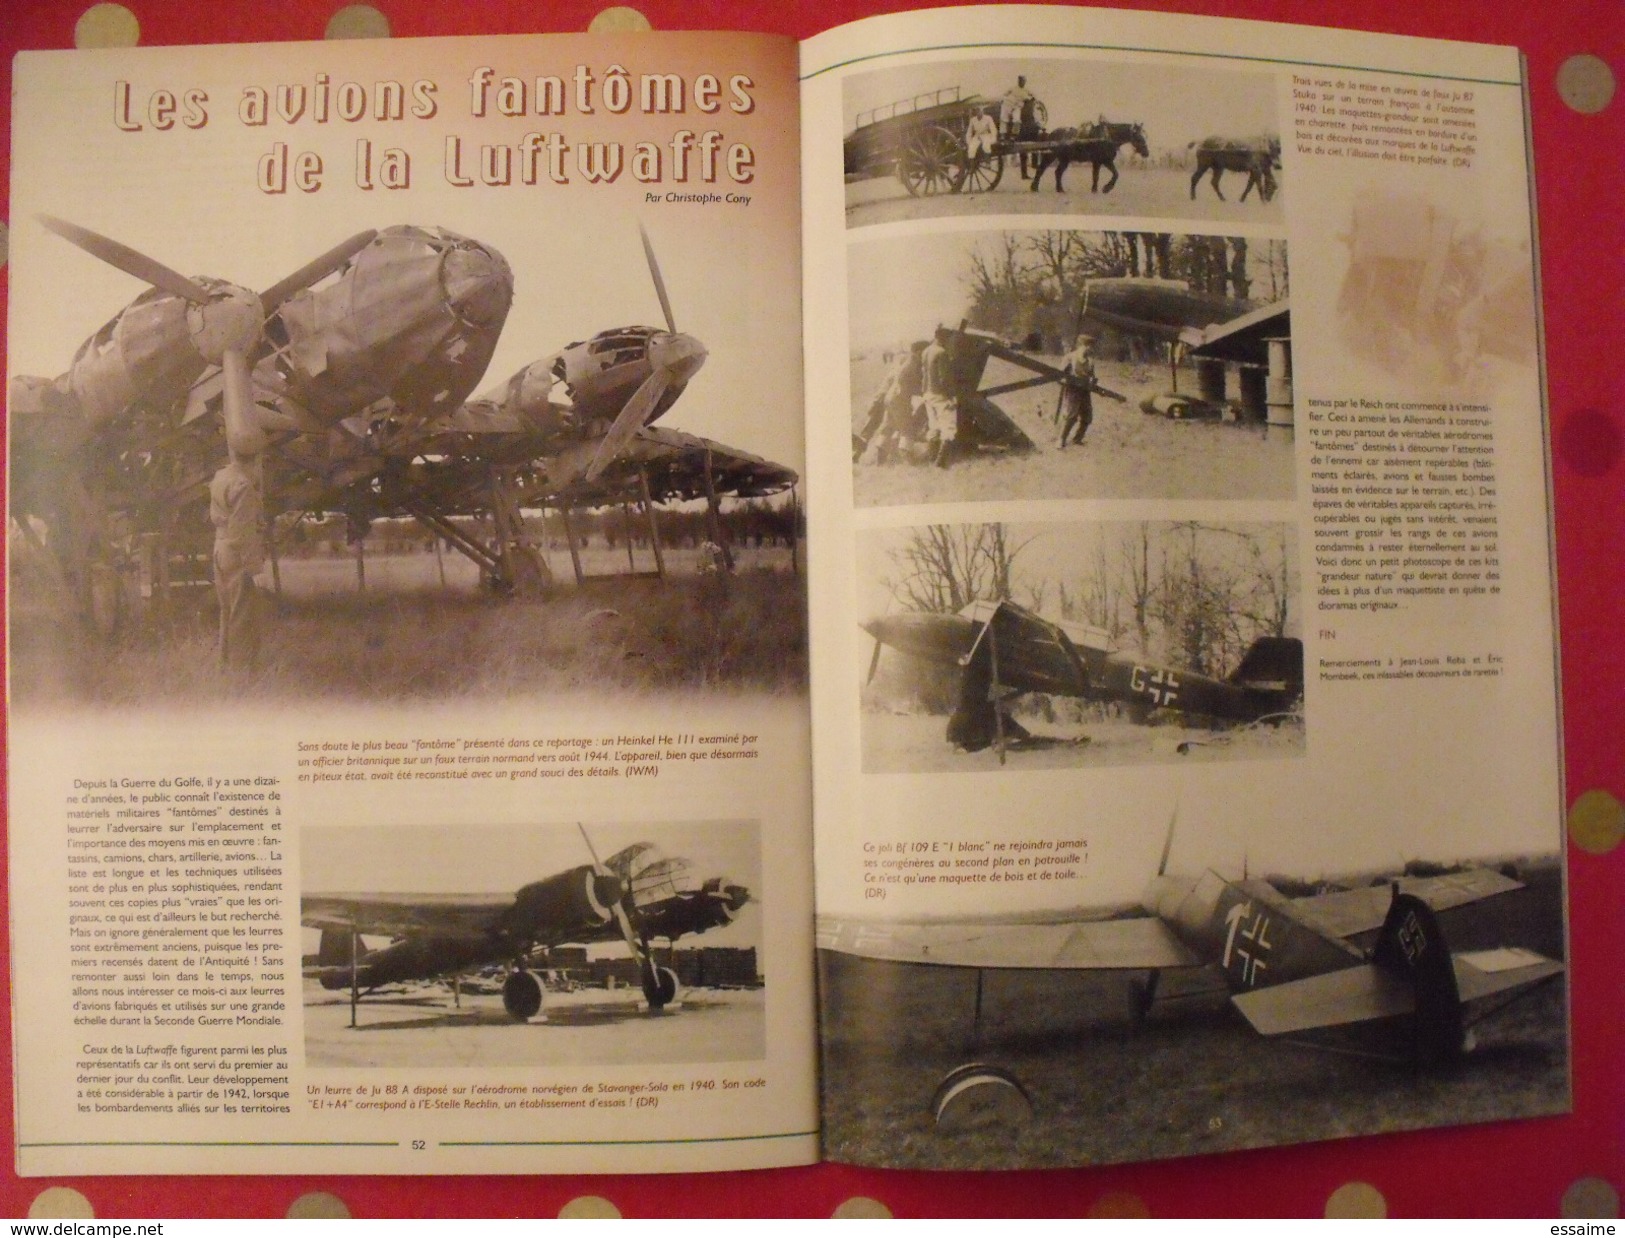 lot de 3 revues Avions. 2002-2003. toute l'aéronautique et son histoire. Aviation avion